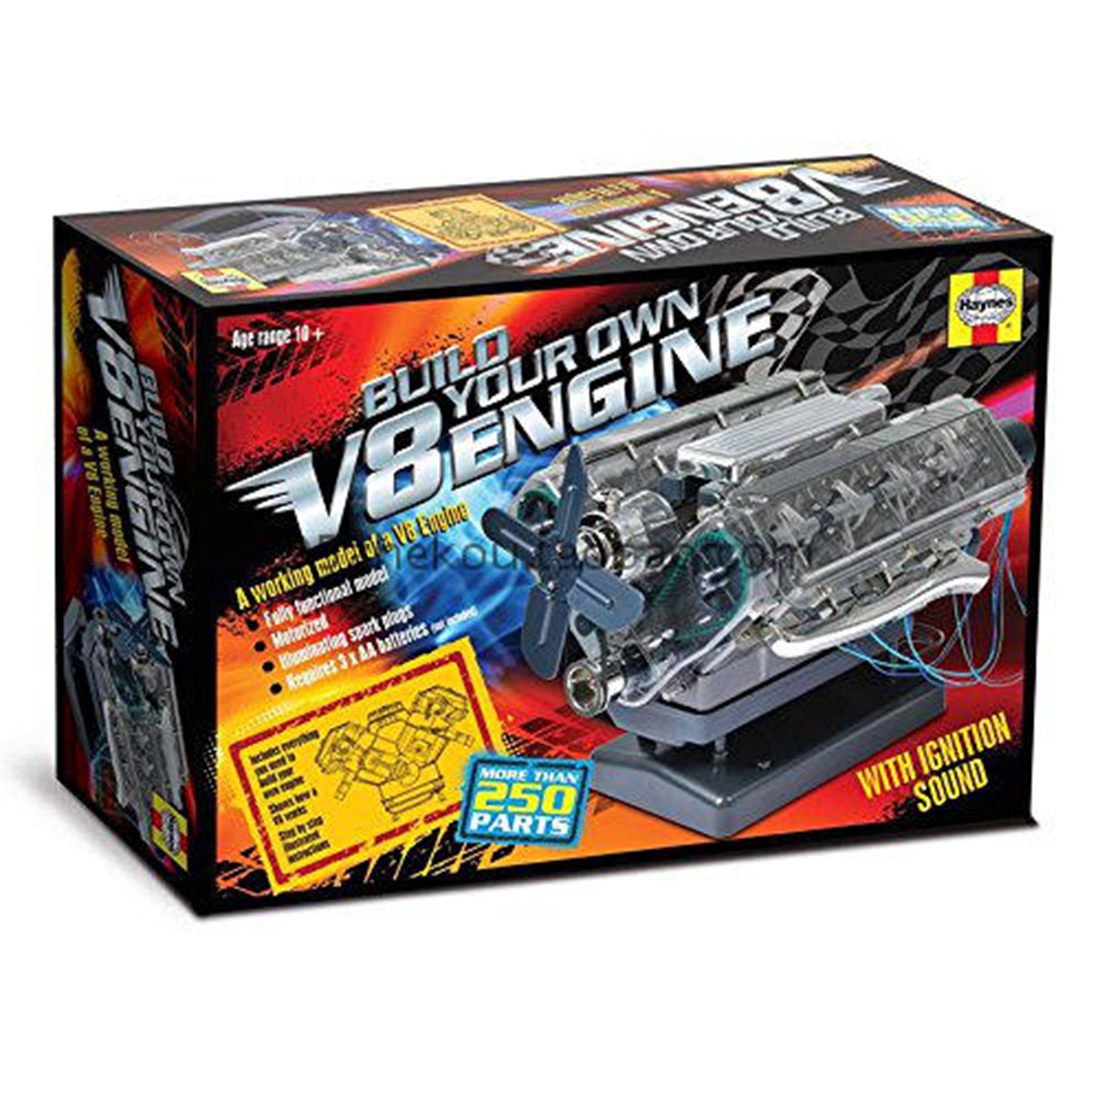 Visible V8 Engine Assembly Model Stem Toy